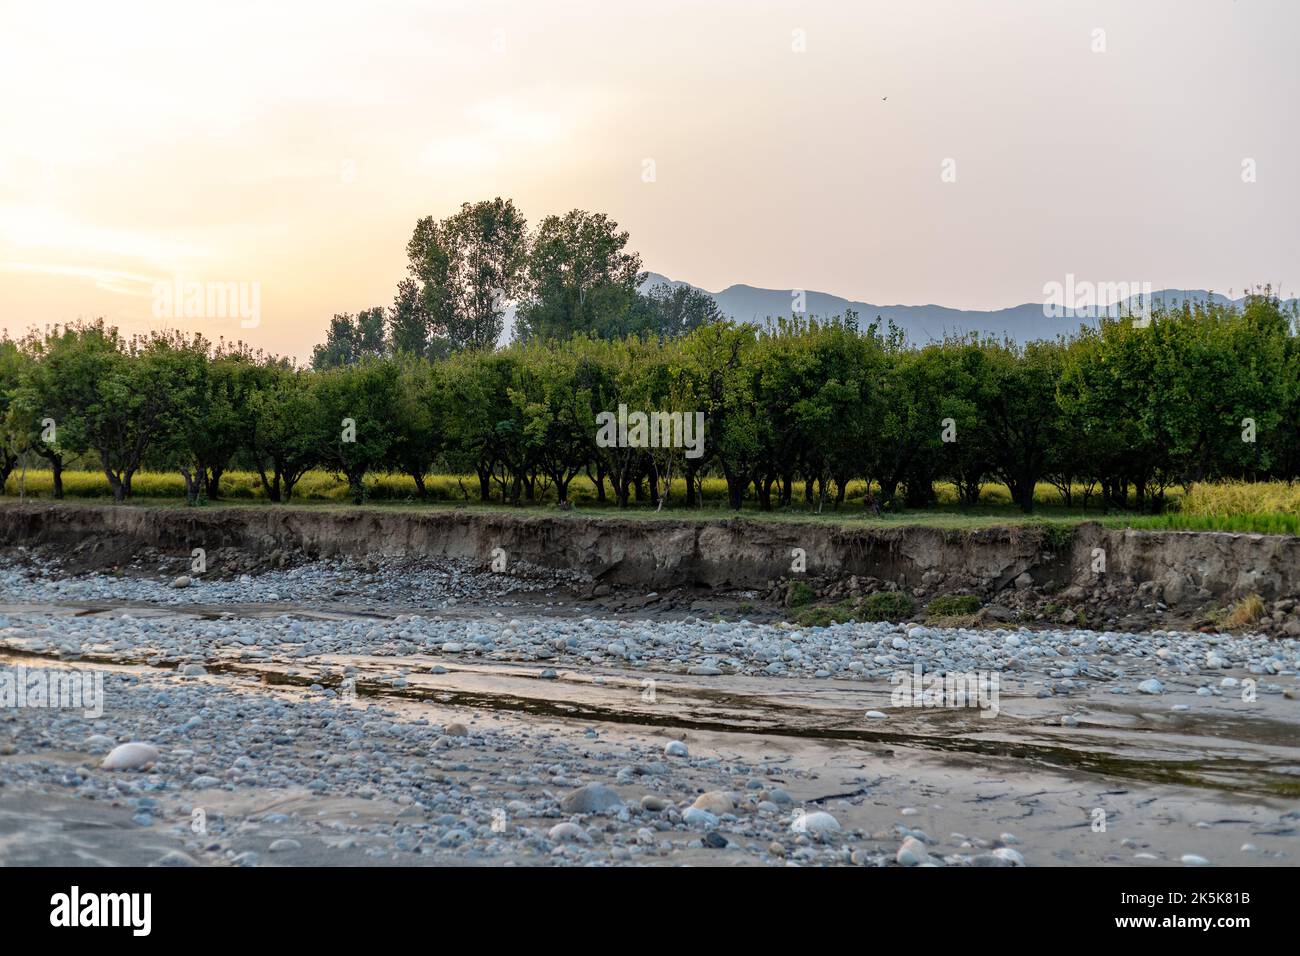 L'inondazione nelle acque fluviali a causa del cambiamento climatico e del riscaldamento globale provoca enormi perdite di terreni agricoli e di aziende agricole nella valle delle acque, in Pakistan Foto Stock